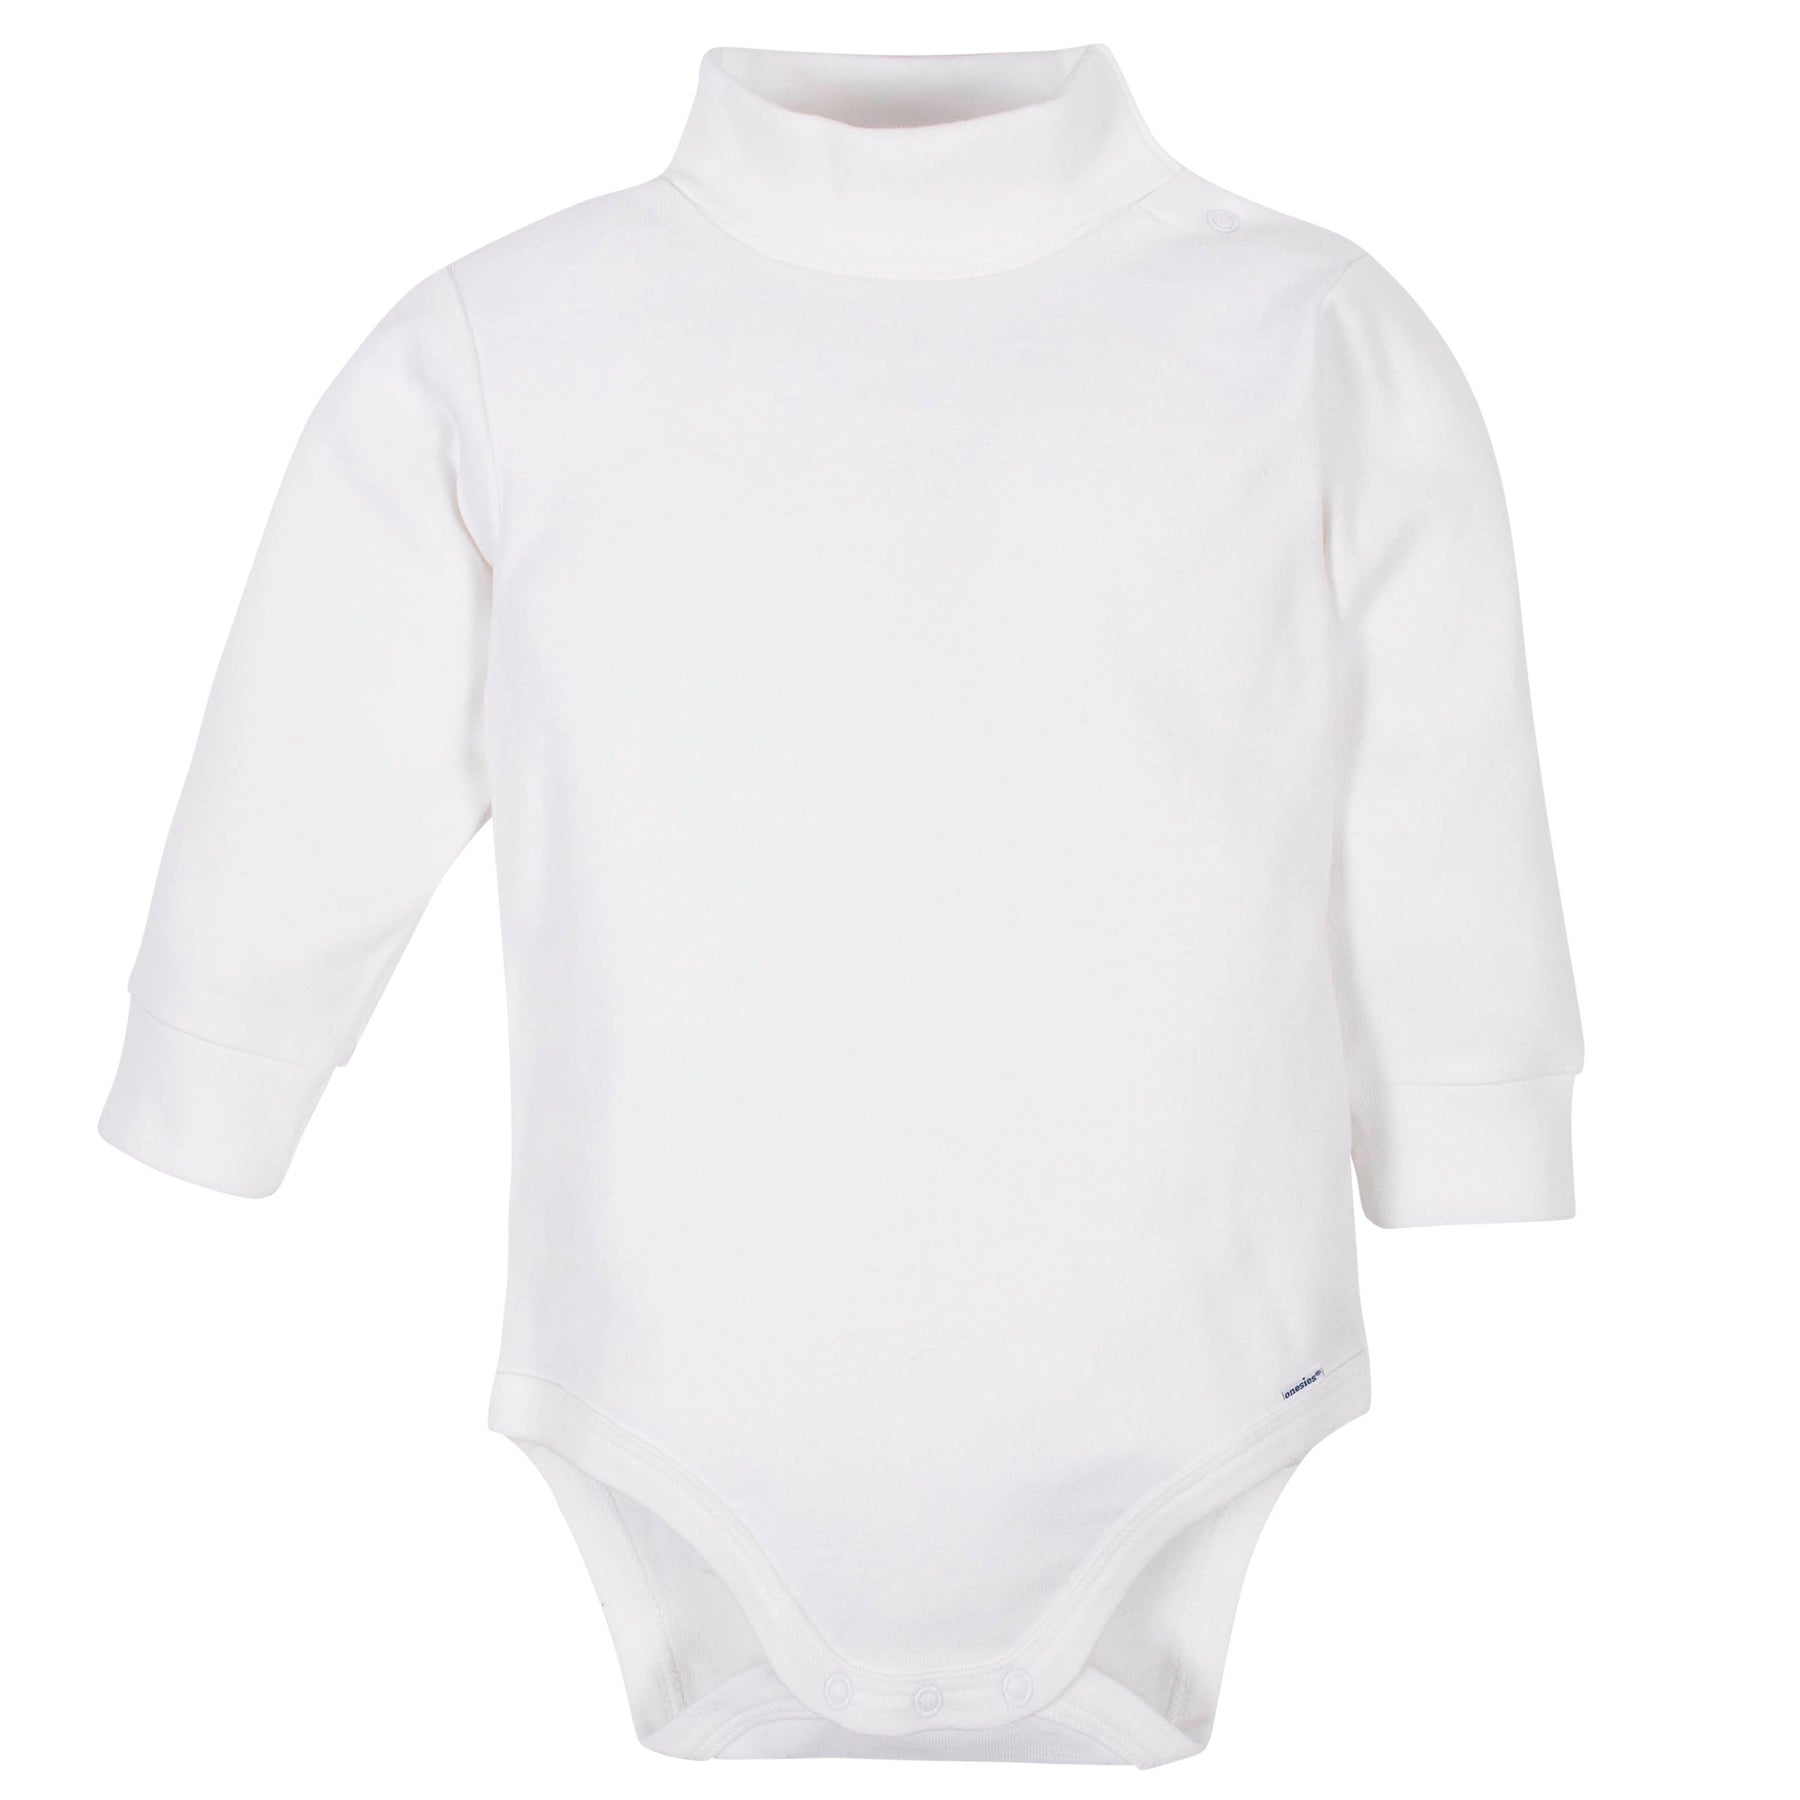 White Long Sleeve Turtleneck Onesies Bodysuits 2-Pack – babyfans